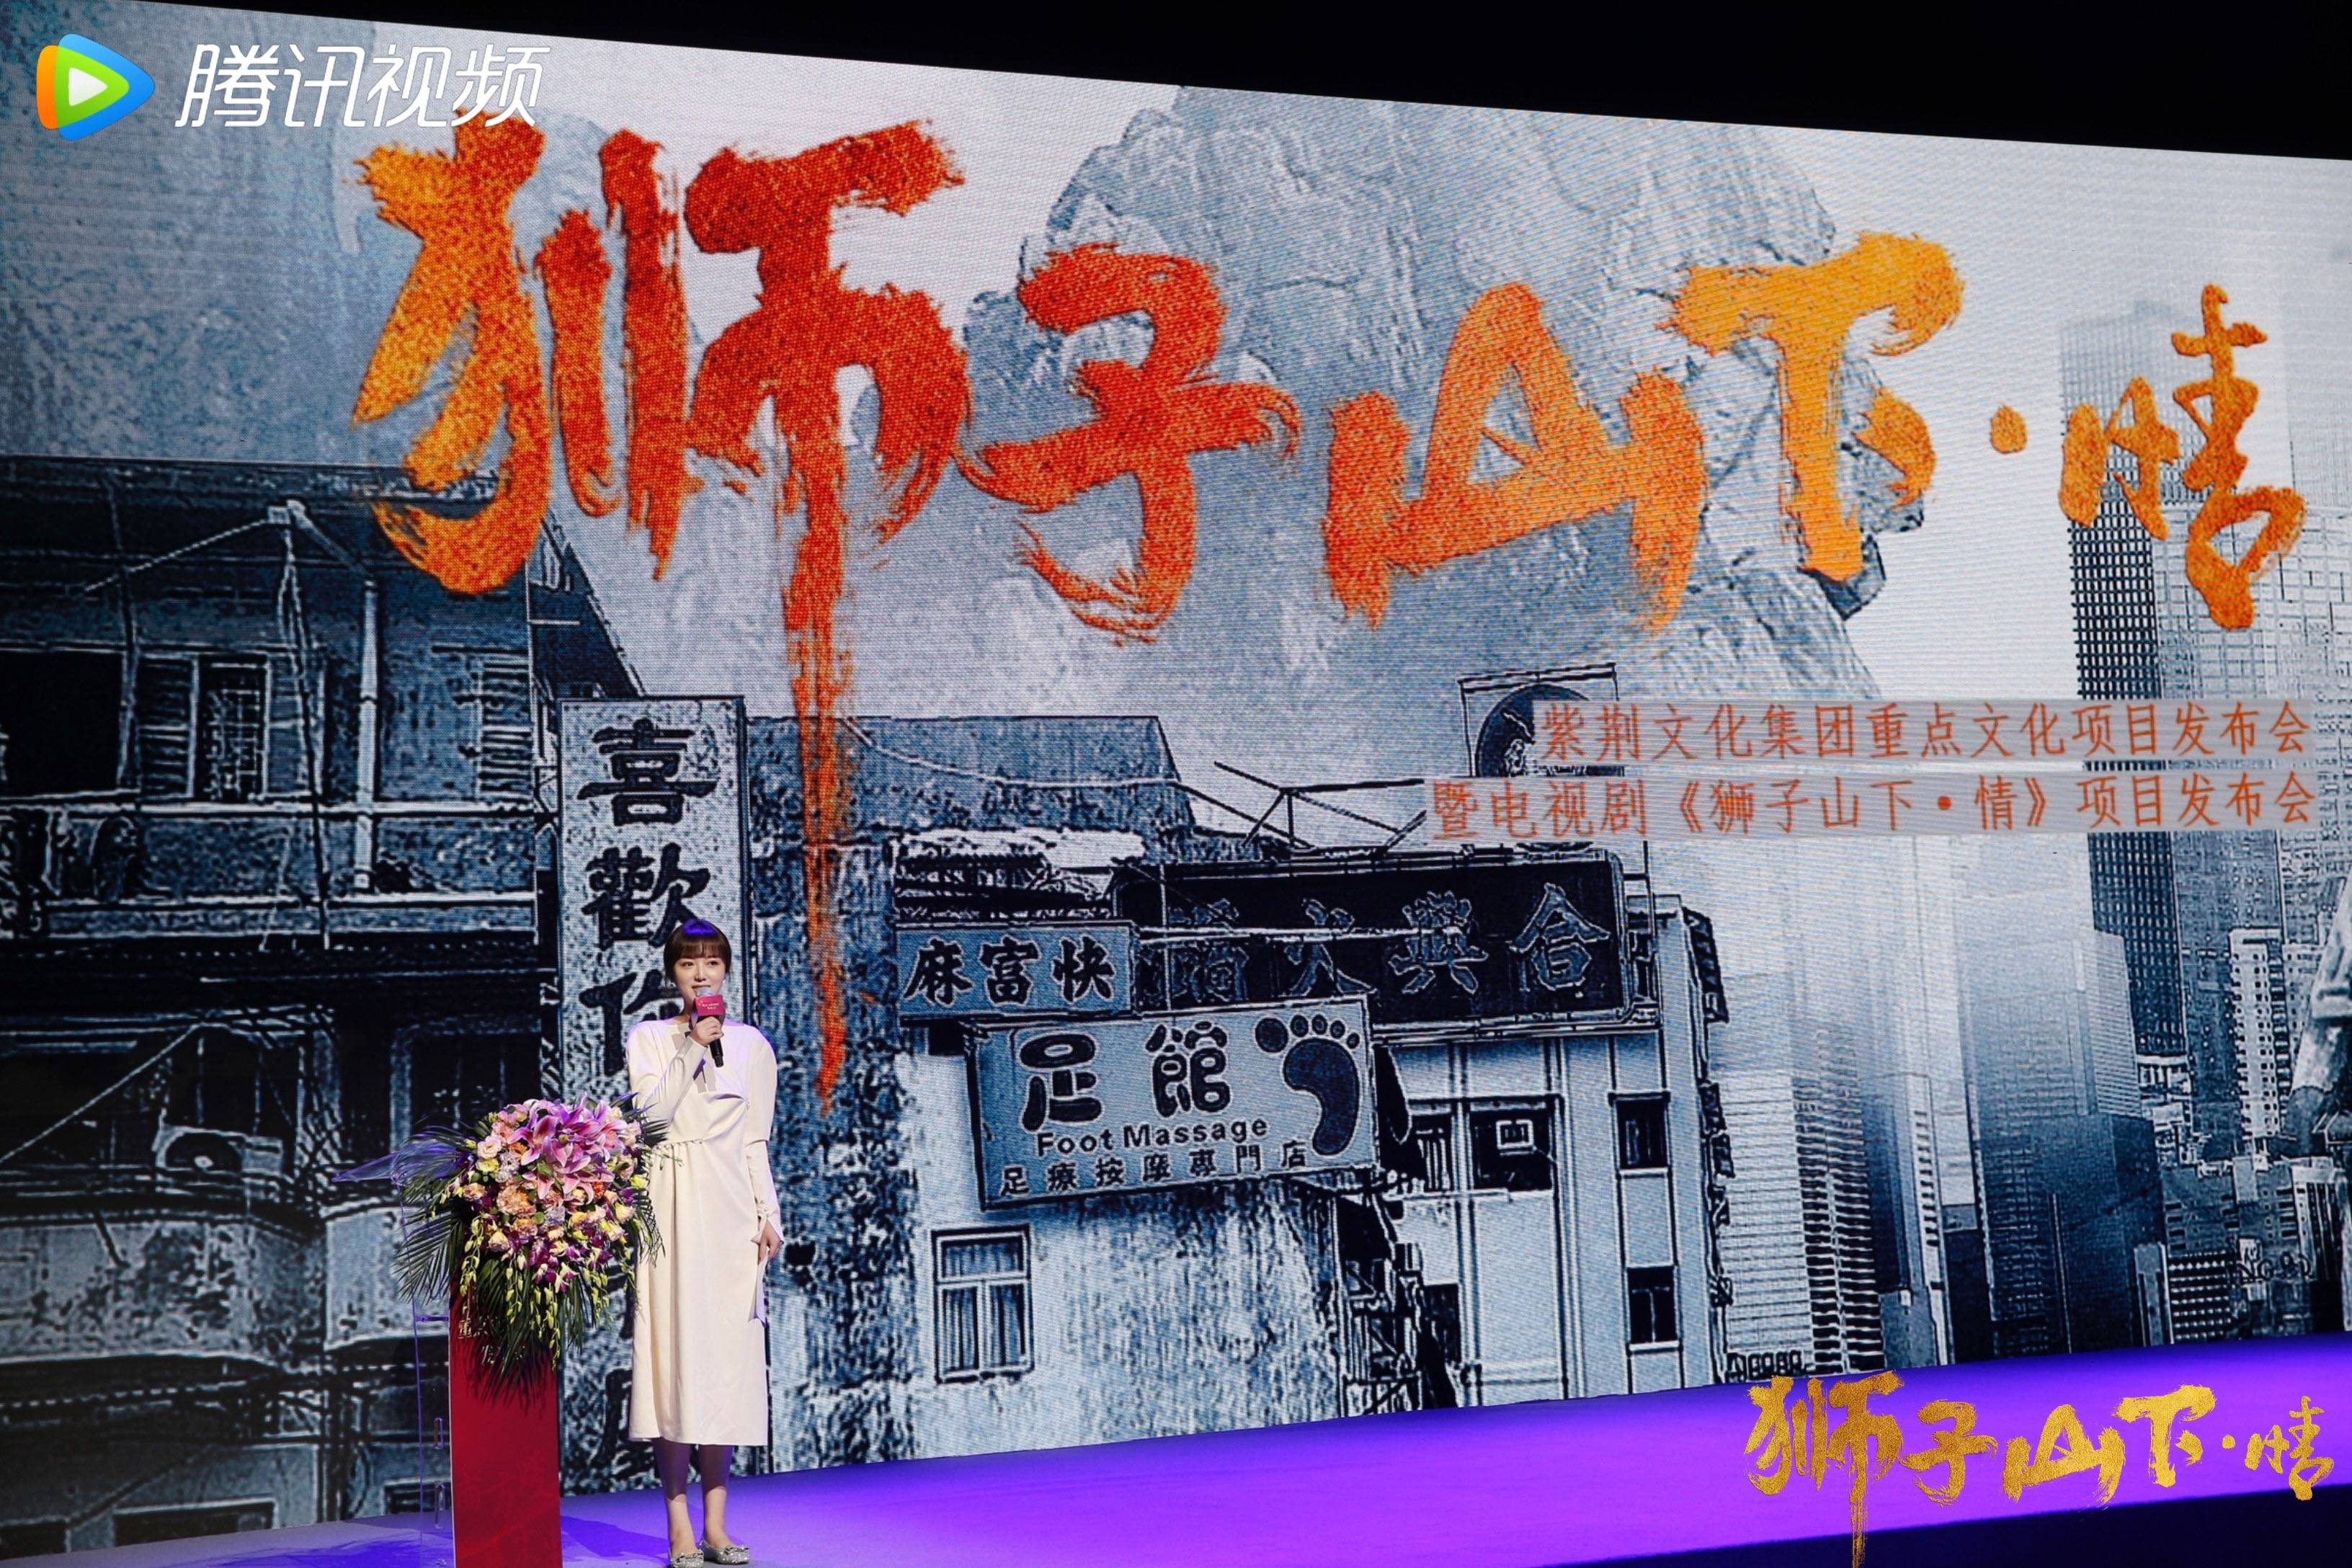 影视剧《狮子山下·情》是为庆祝2022年香港回归25周年定制的重点剧目